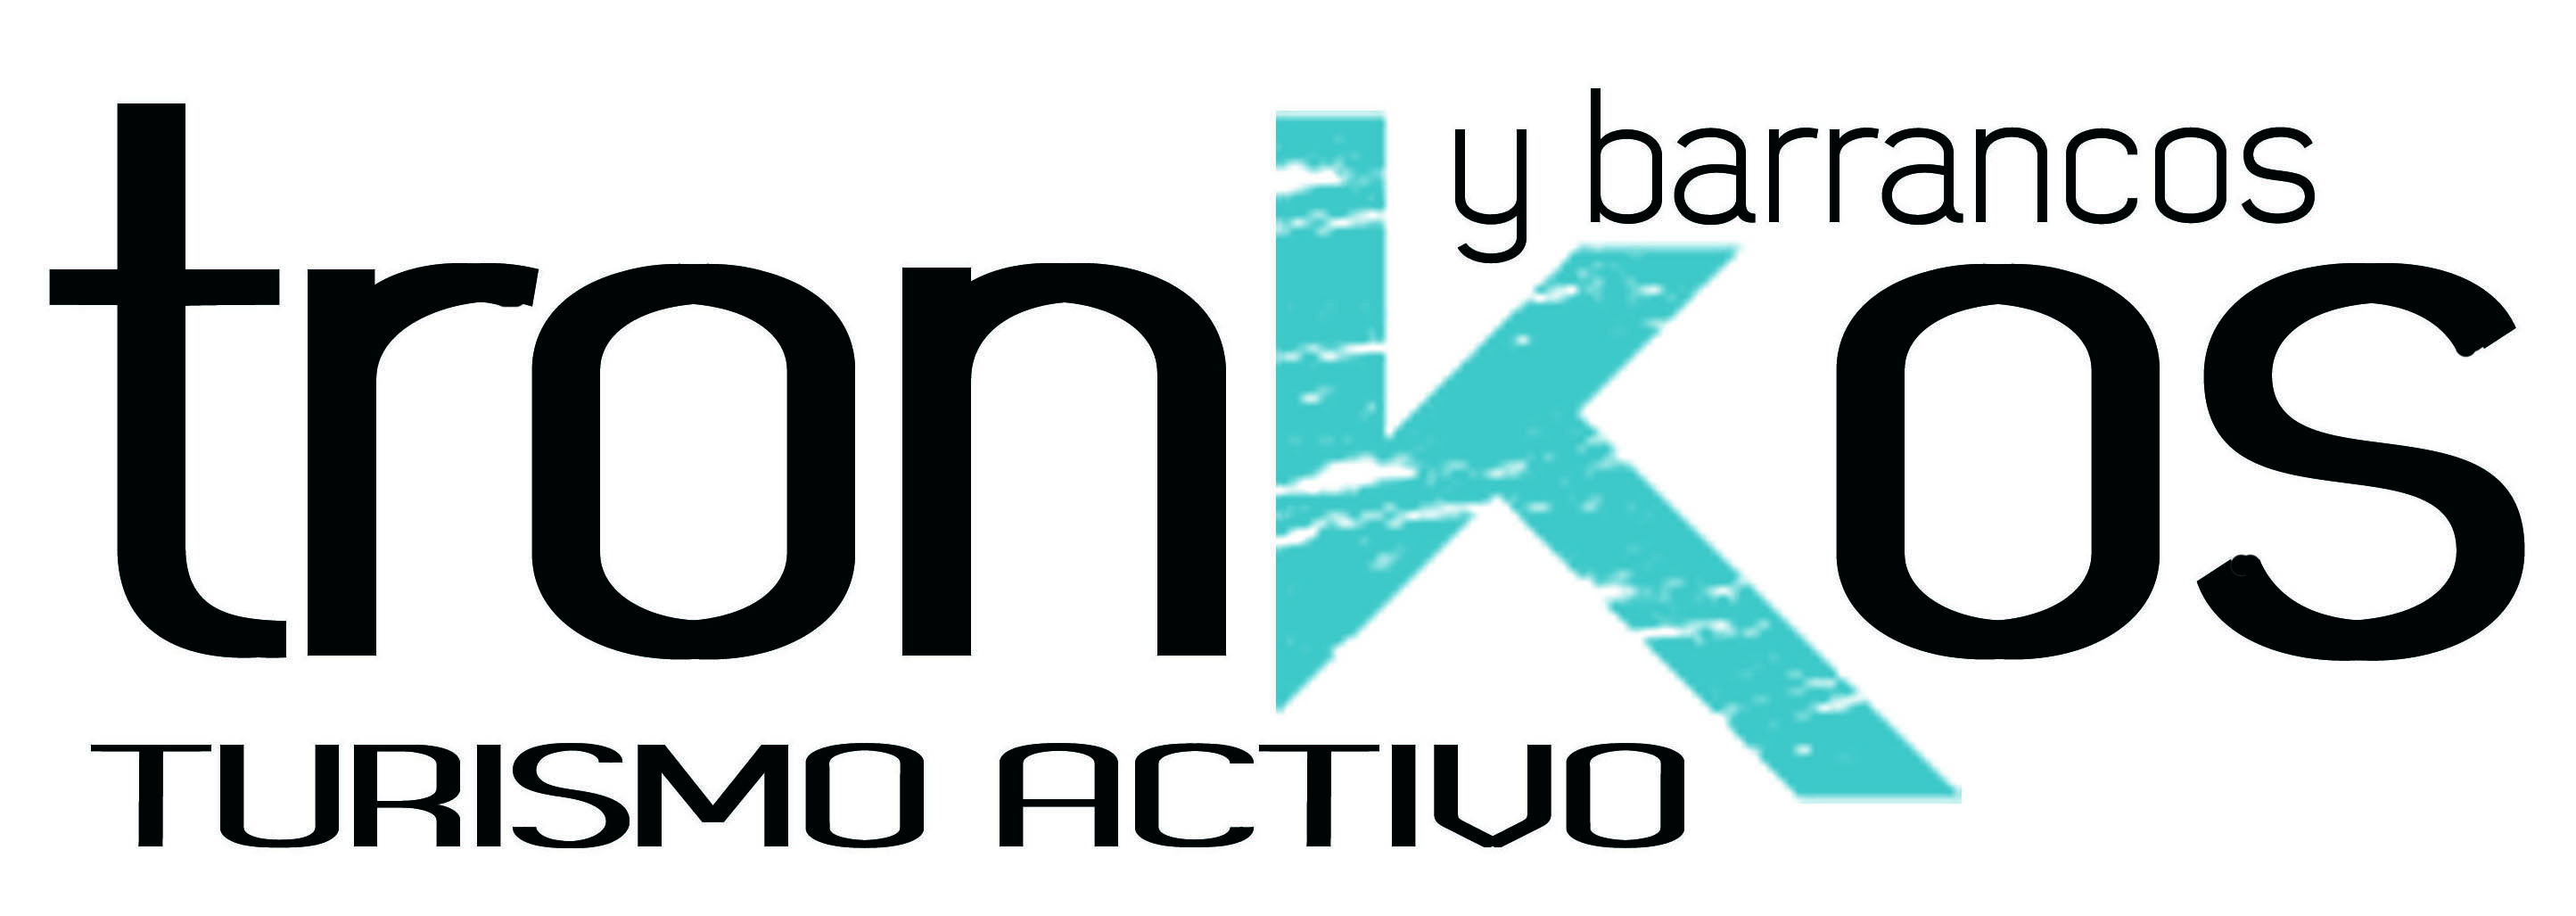 Logo grande de Tronkos y Barrancos